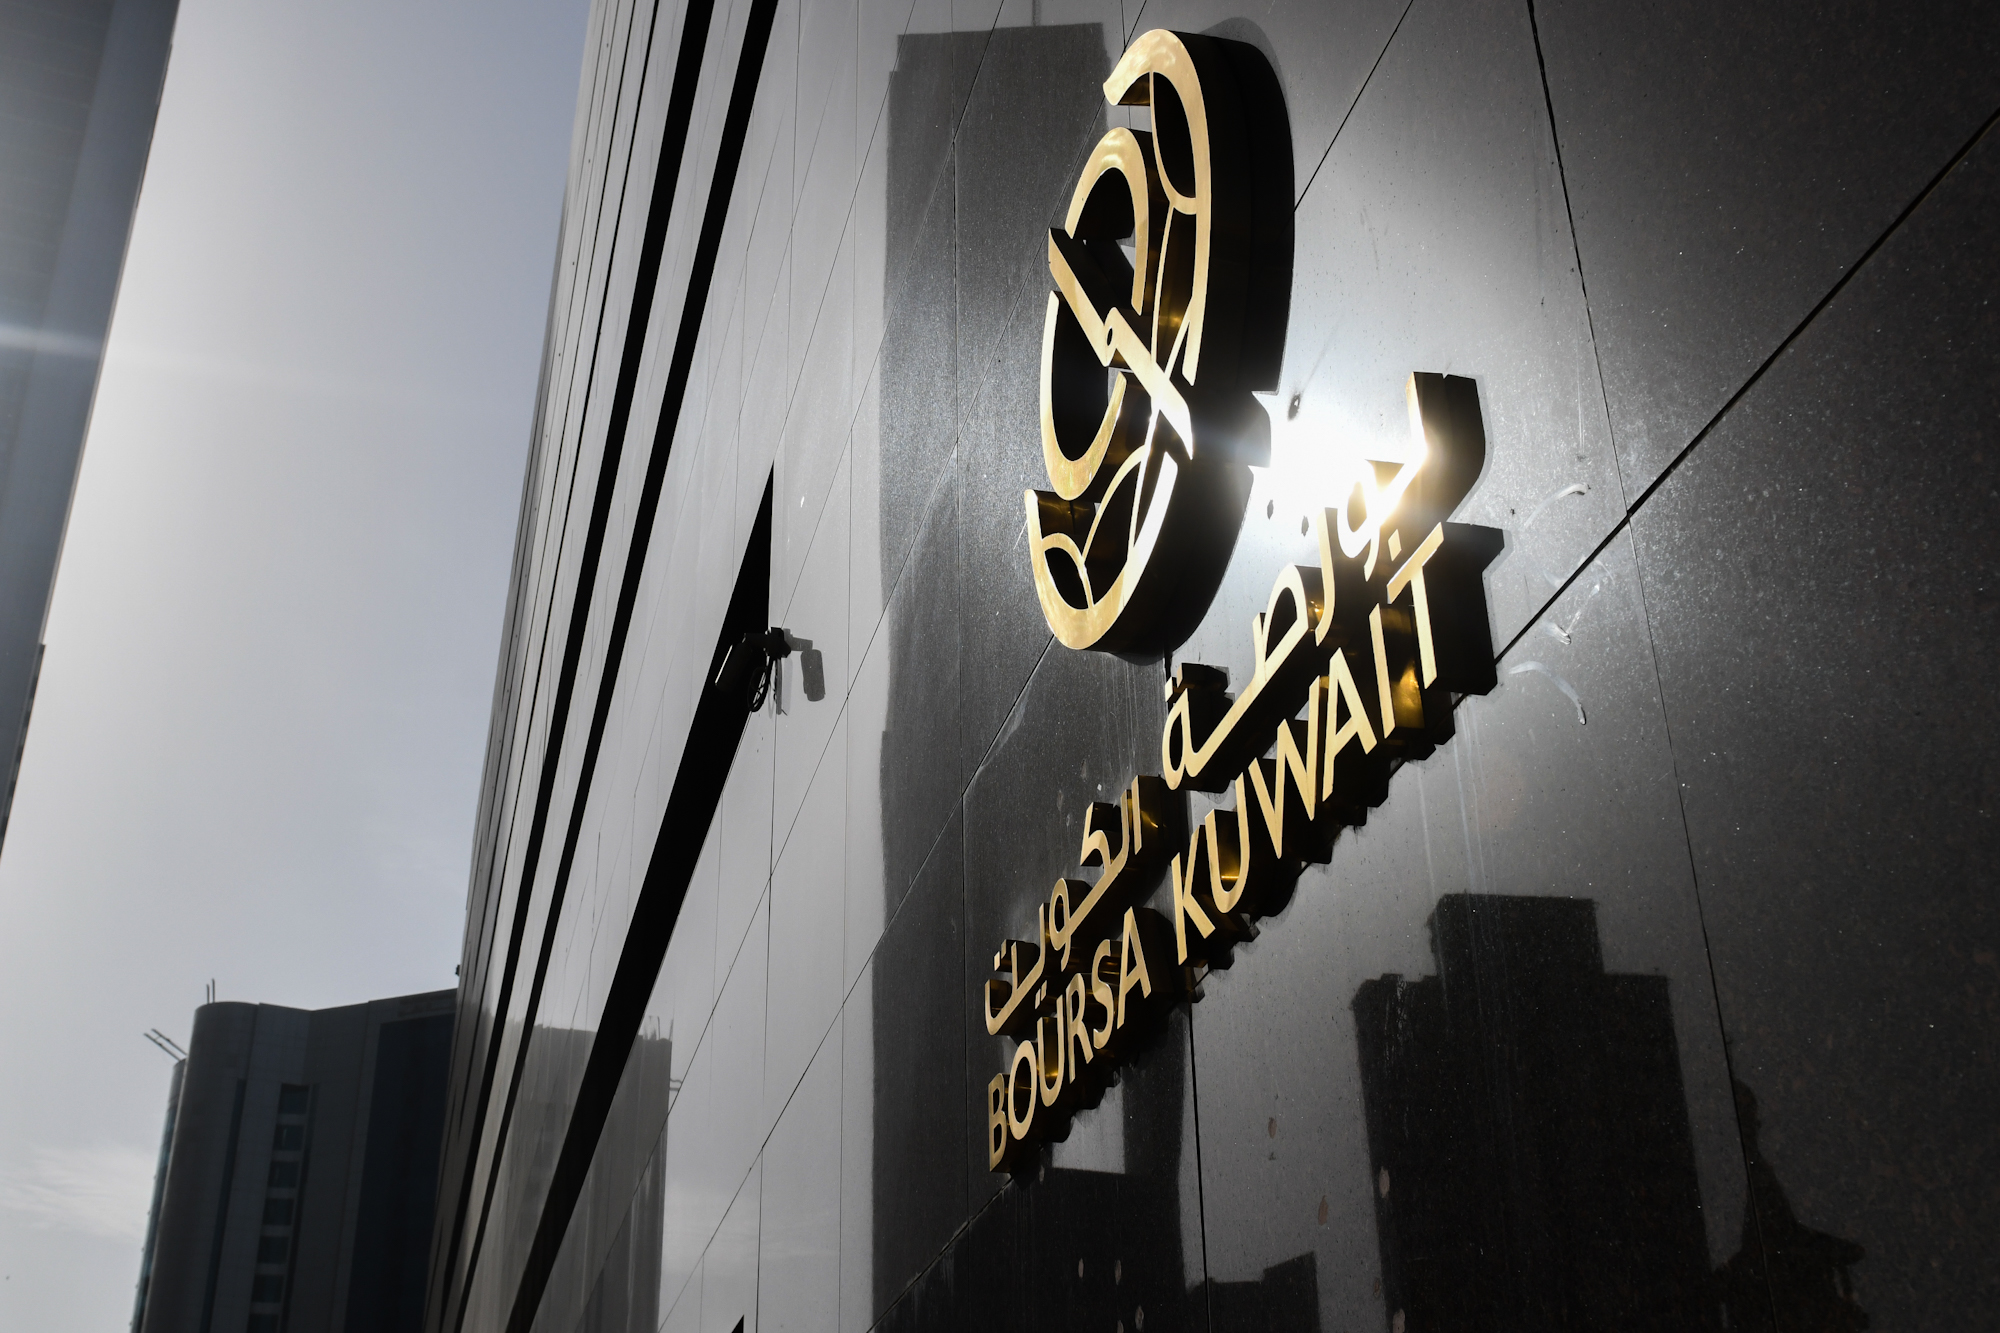 بورصة الكويت تغلق تعاملاتها على ارتفاع مؤشرها العام 21ر43 نقطة ليبلغ 91ر7256 بنسبة 6ر0 في المئة                                                                                                                                                           